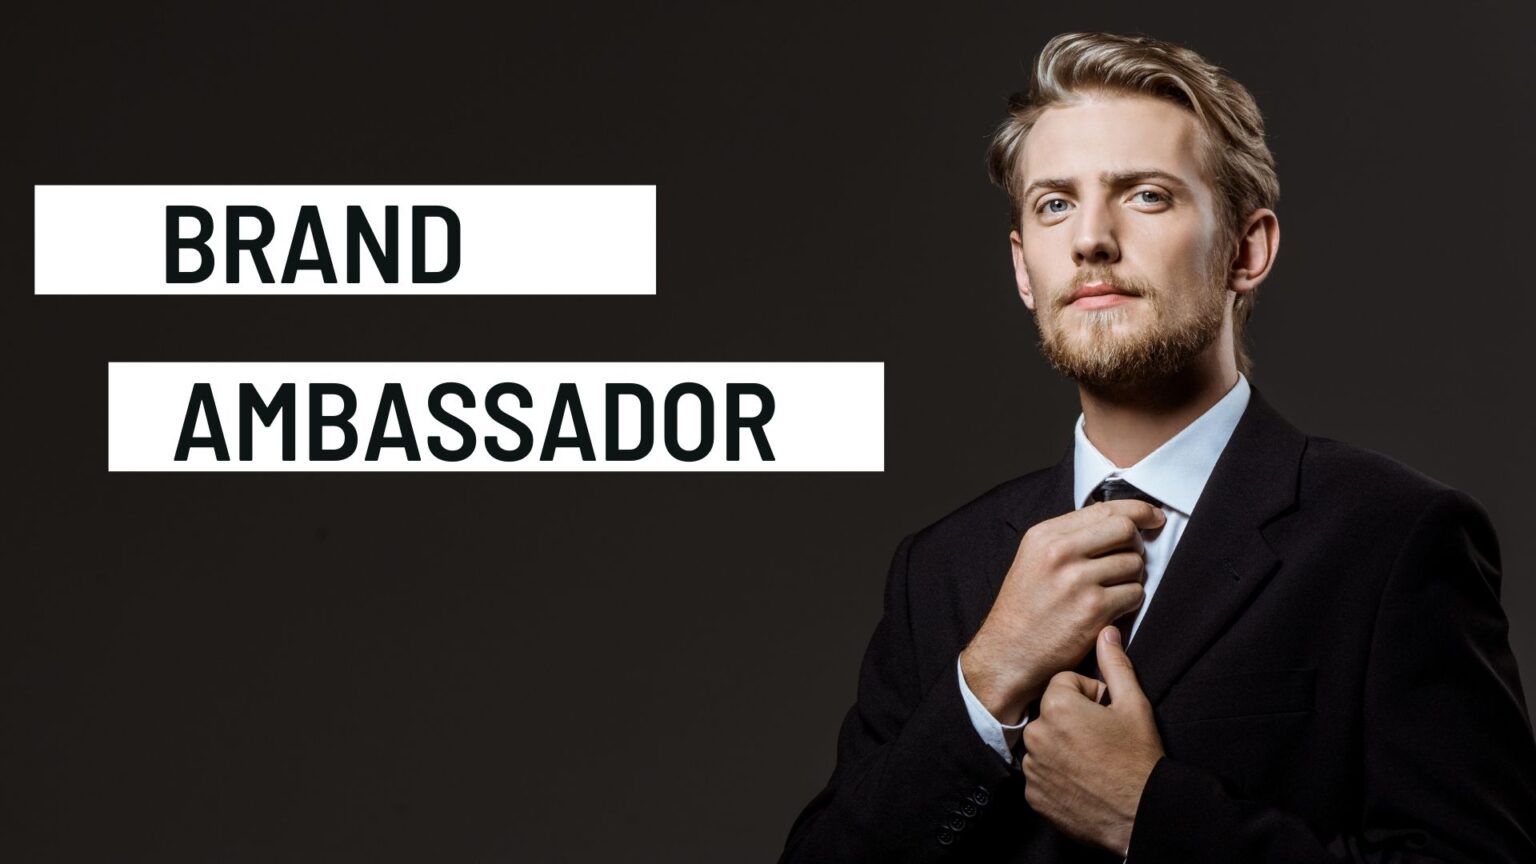 Who is a Brand Ambassador? The Marketing Eggspert Blog